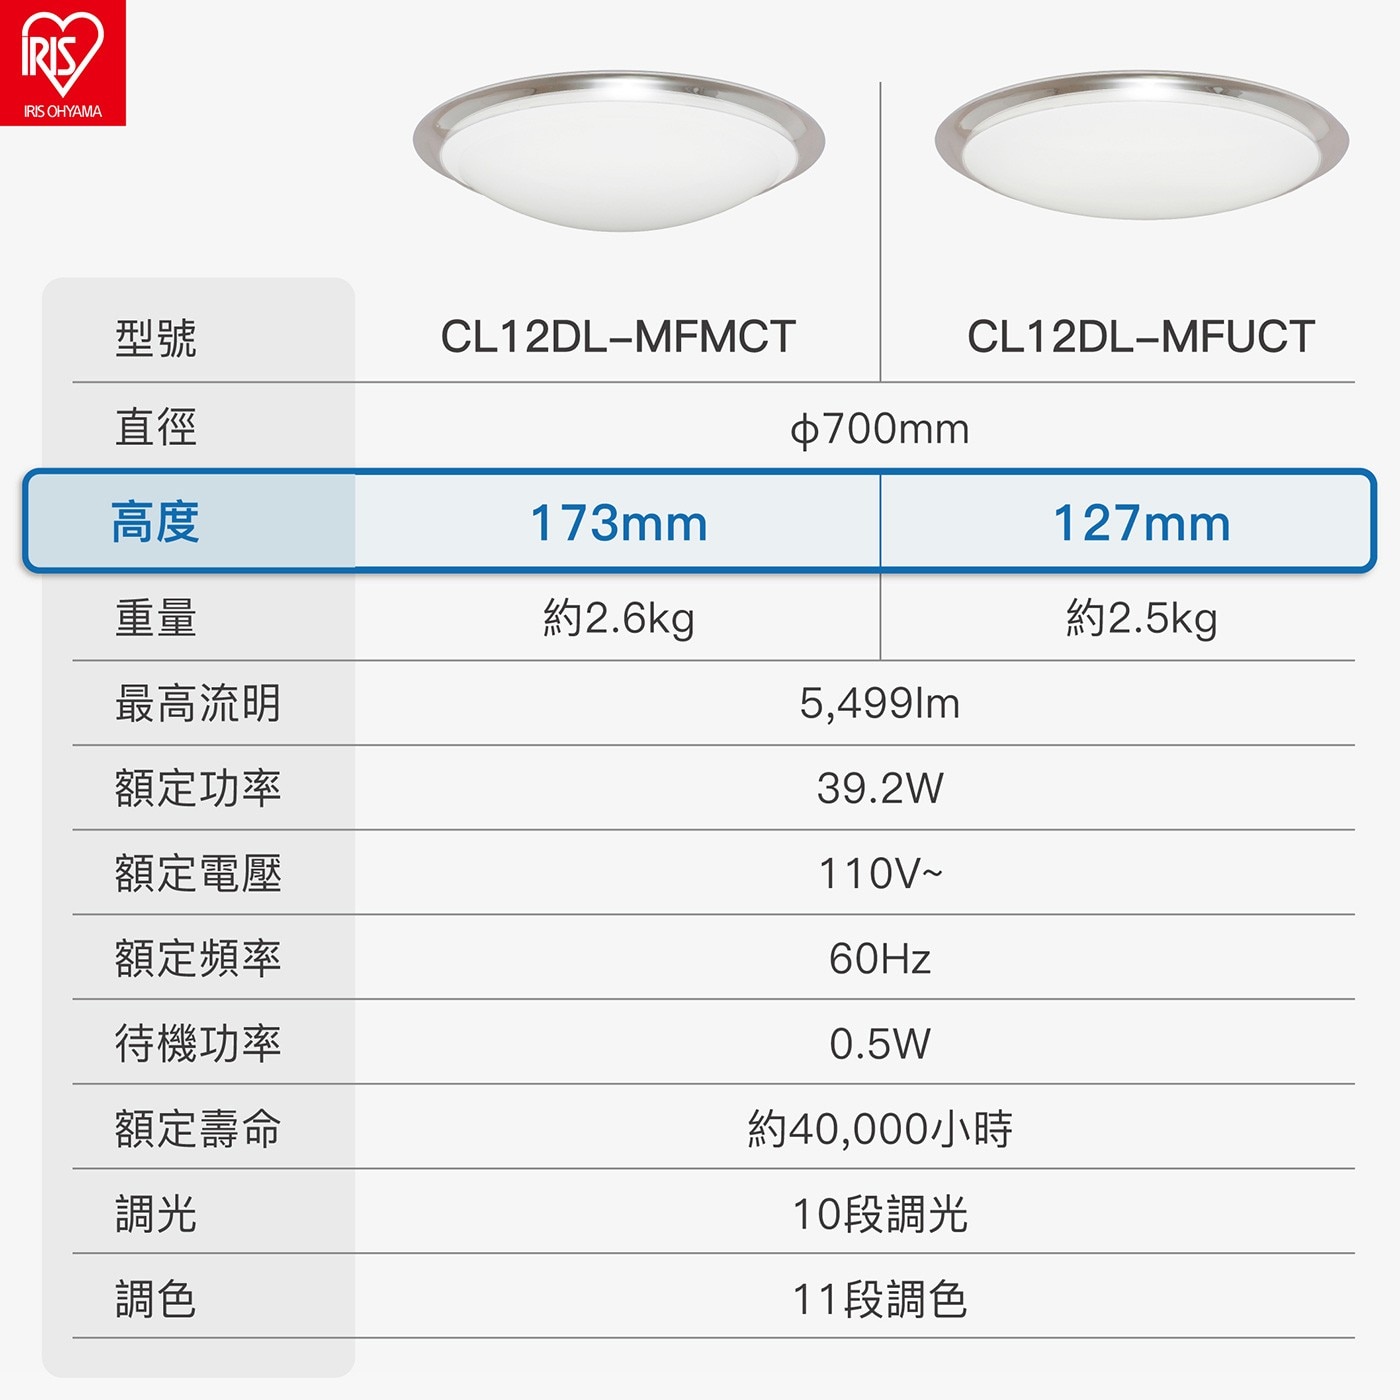 IRIS LED 多功能吸頂燈可調亮度、可調白光或黃光，三步驟輕鬆安裝，快拆式配線，節電節能。燈具本體薄功能多、簡約的風格設計適合各種空間。